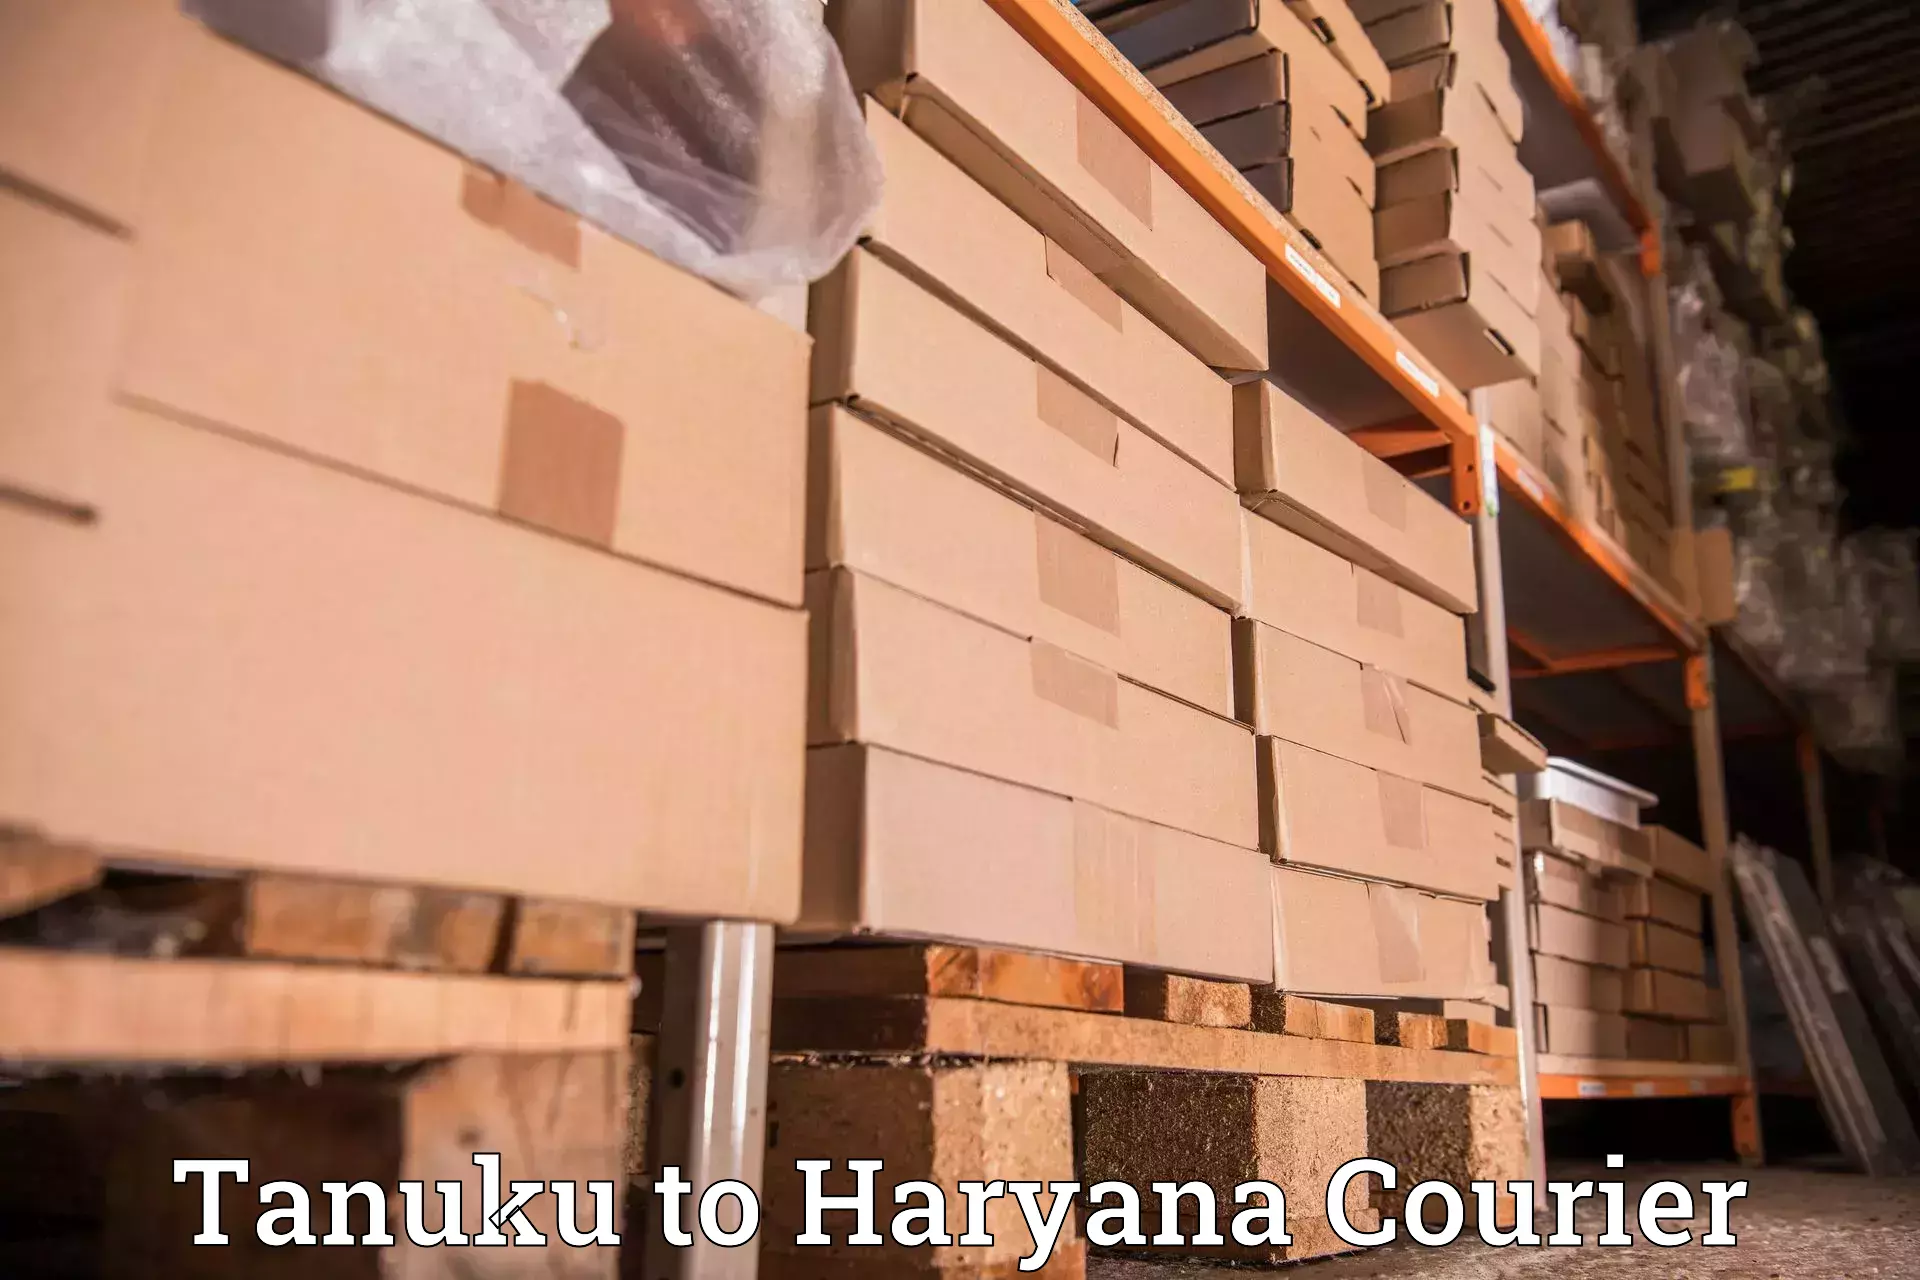 Online shipping calculator Tanuku to Chirya